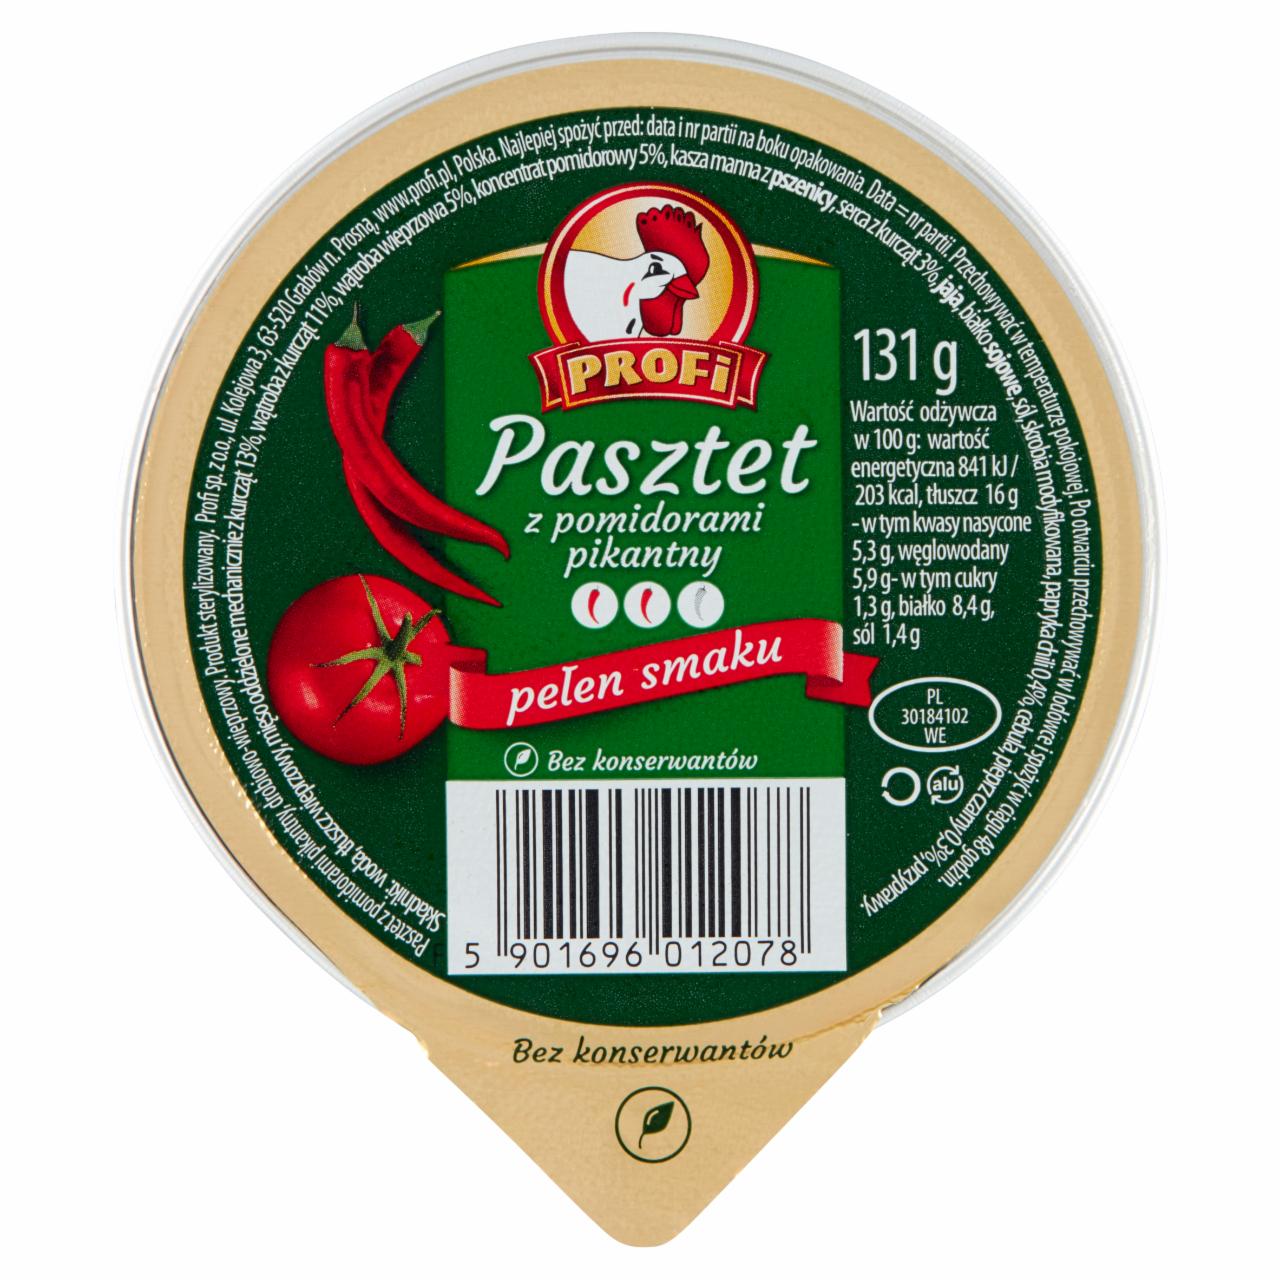 Zdjęcia - Profi Pasztet z pomidorami pikantny 131 g